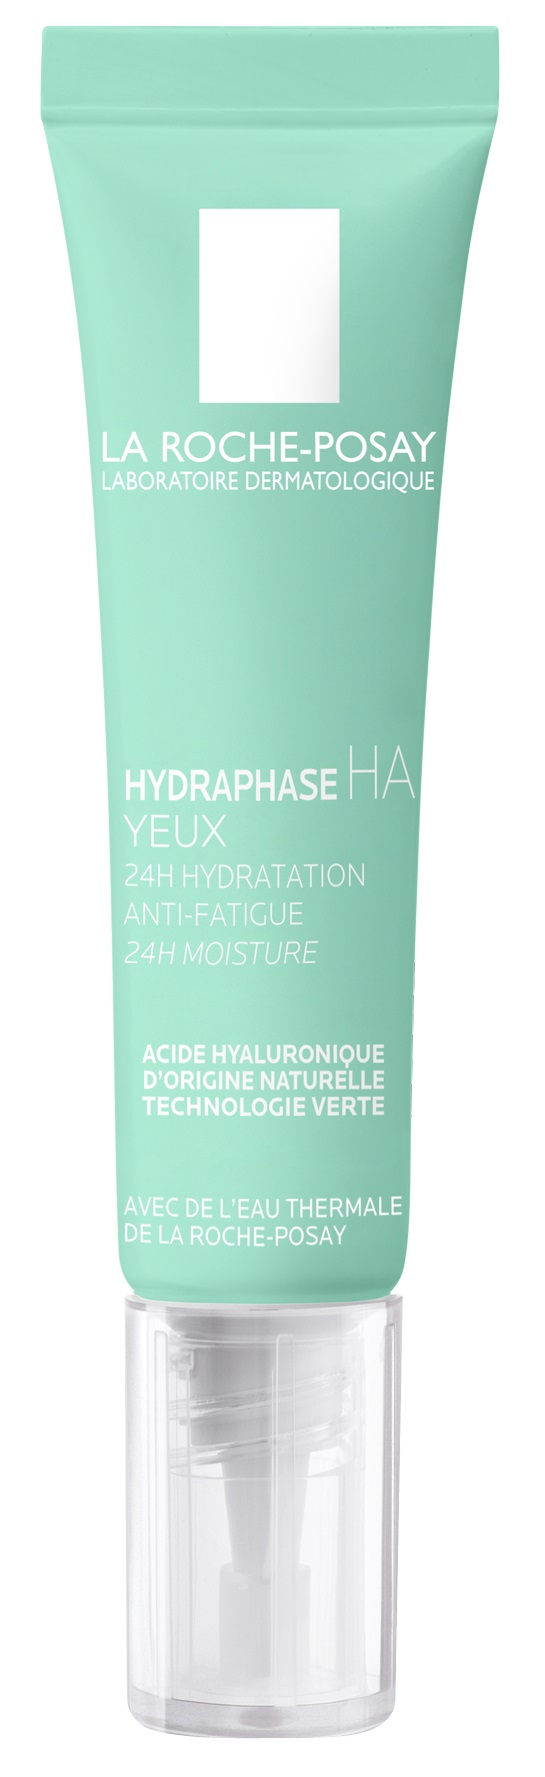 LA ROCHE-POSAY Hydraphase HA Intense hidratáló szemkörnyékápoló 15 ml